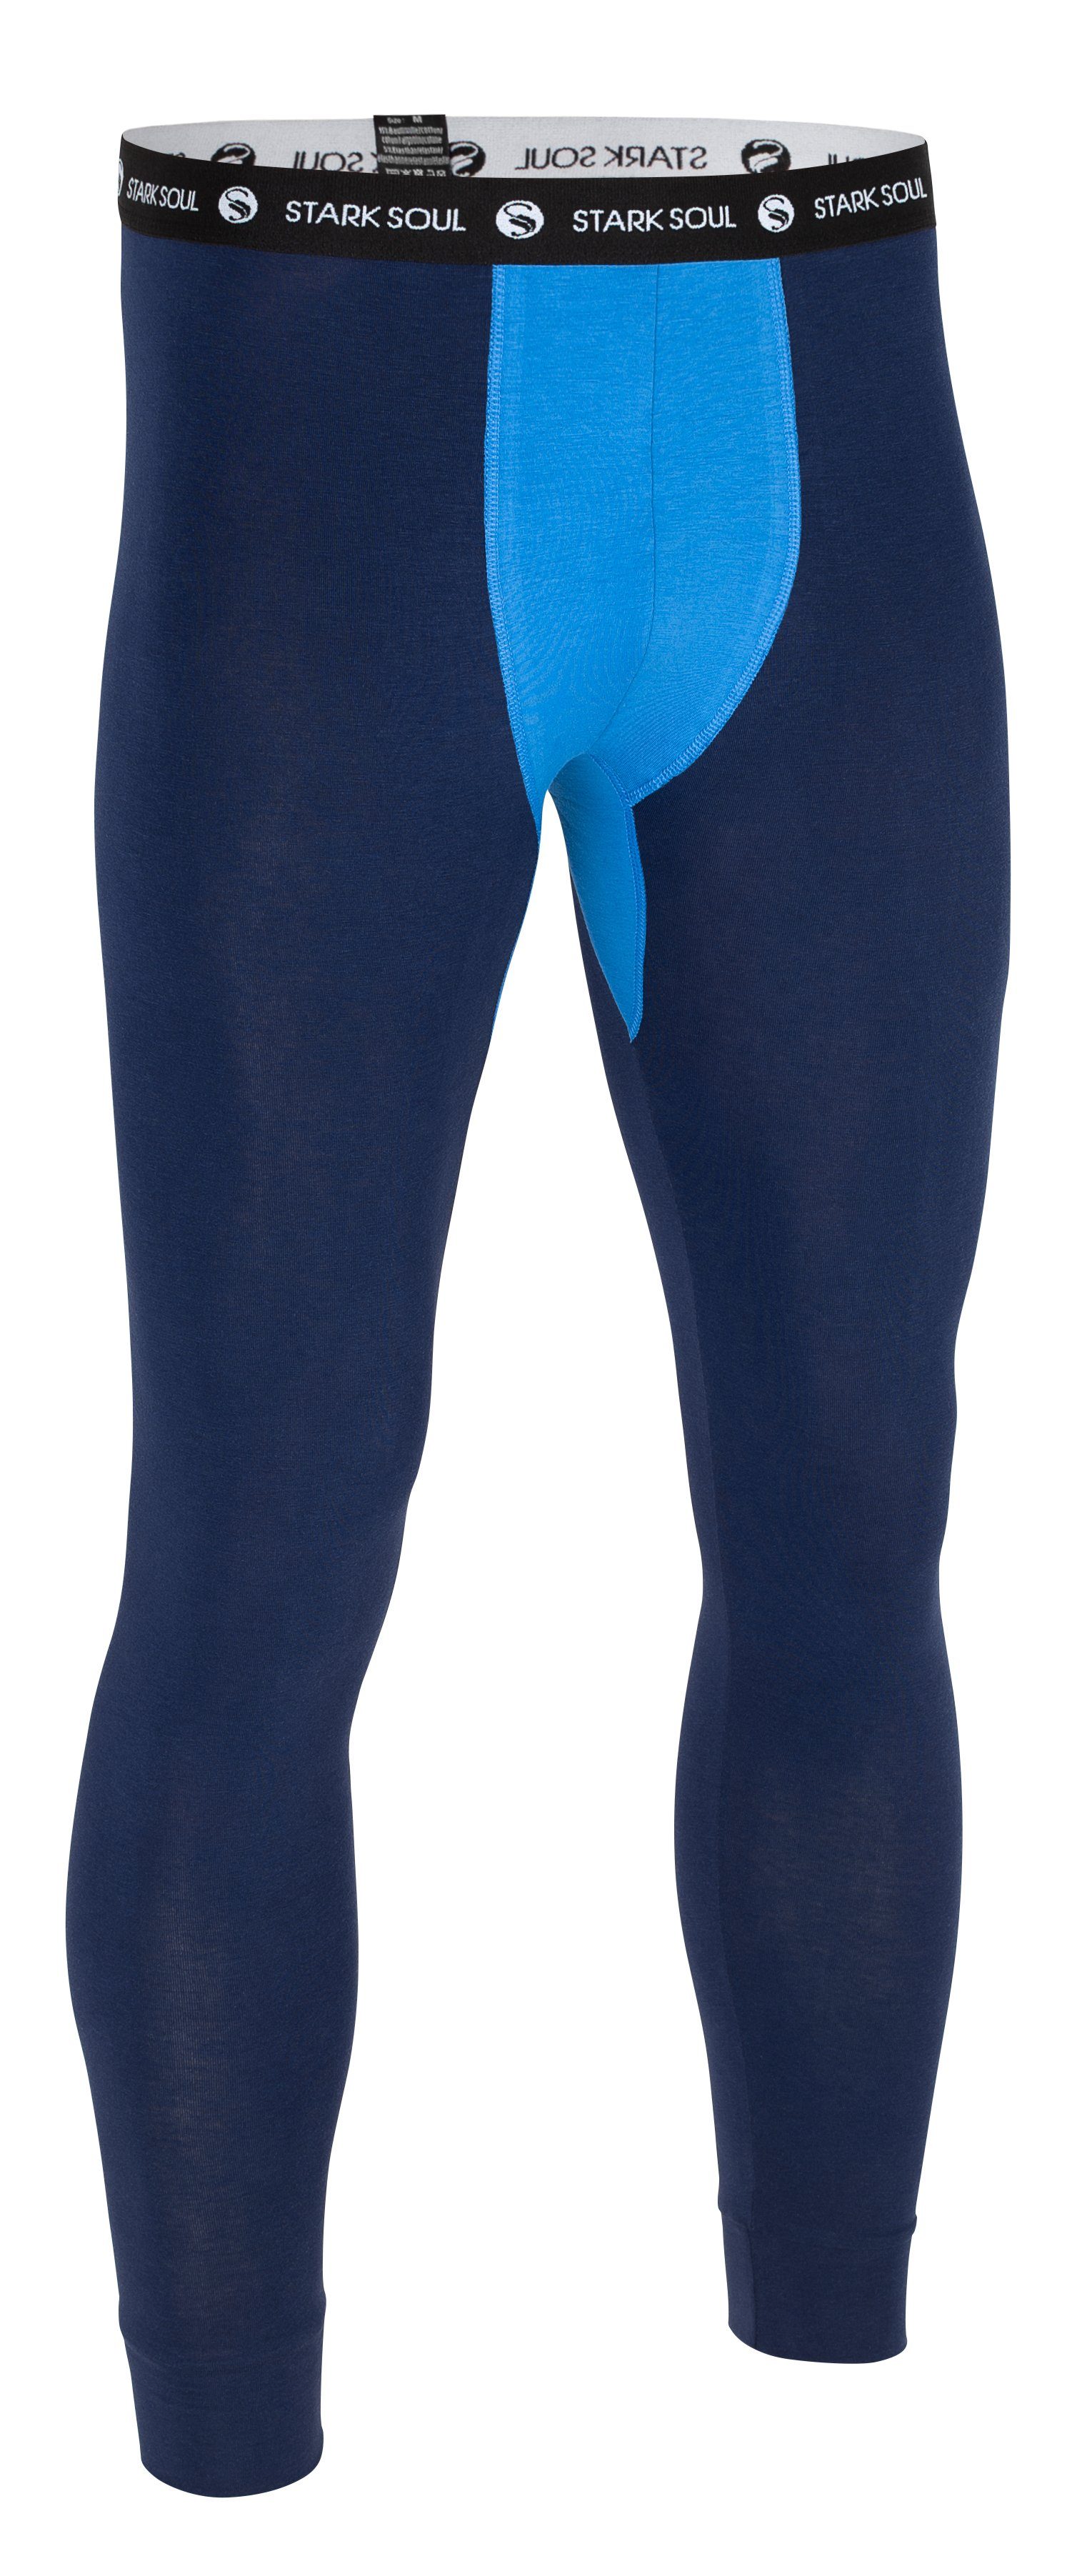 Long Lange Webbund Stark Unterhose Marine-Blau mit Logo Web-Gummibund John Soul® - weichem Unterhose Lange